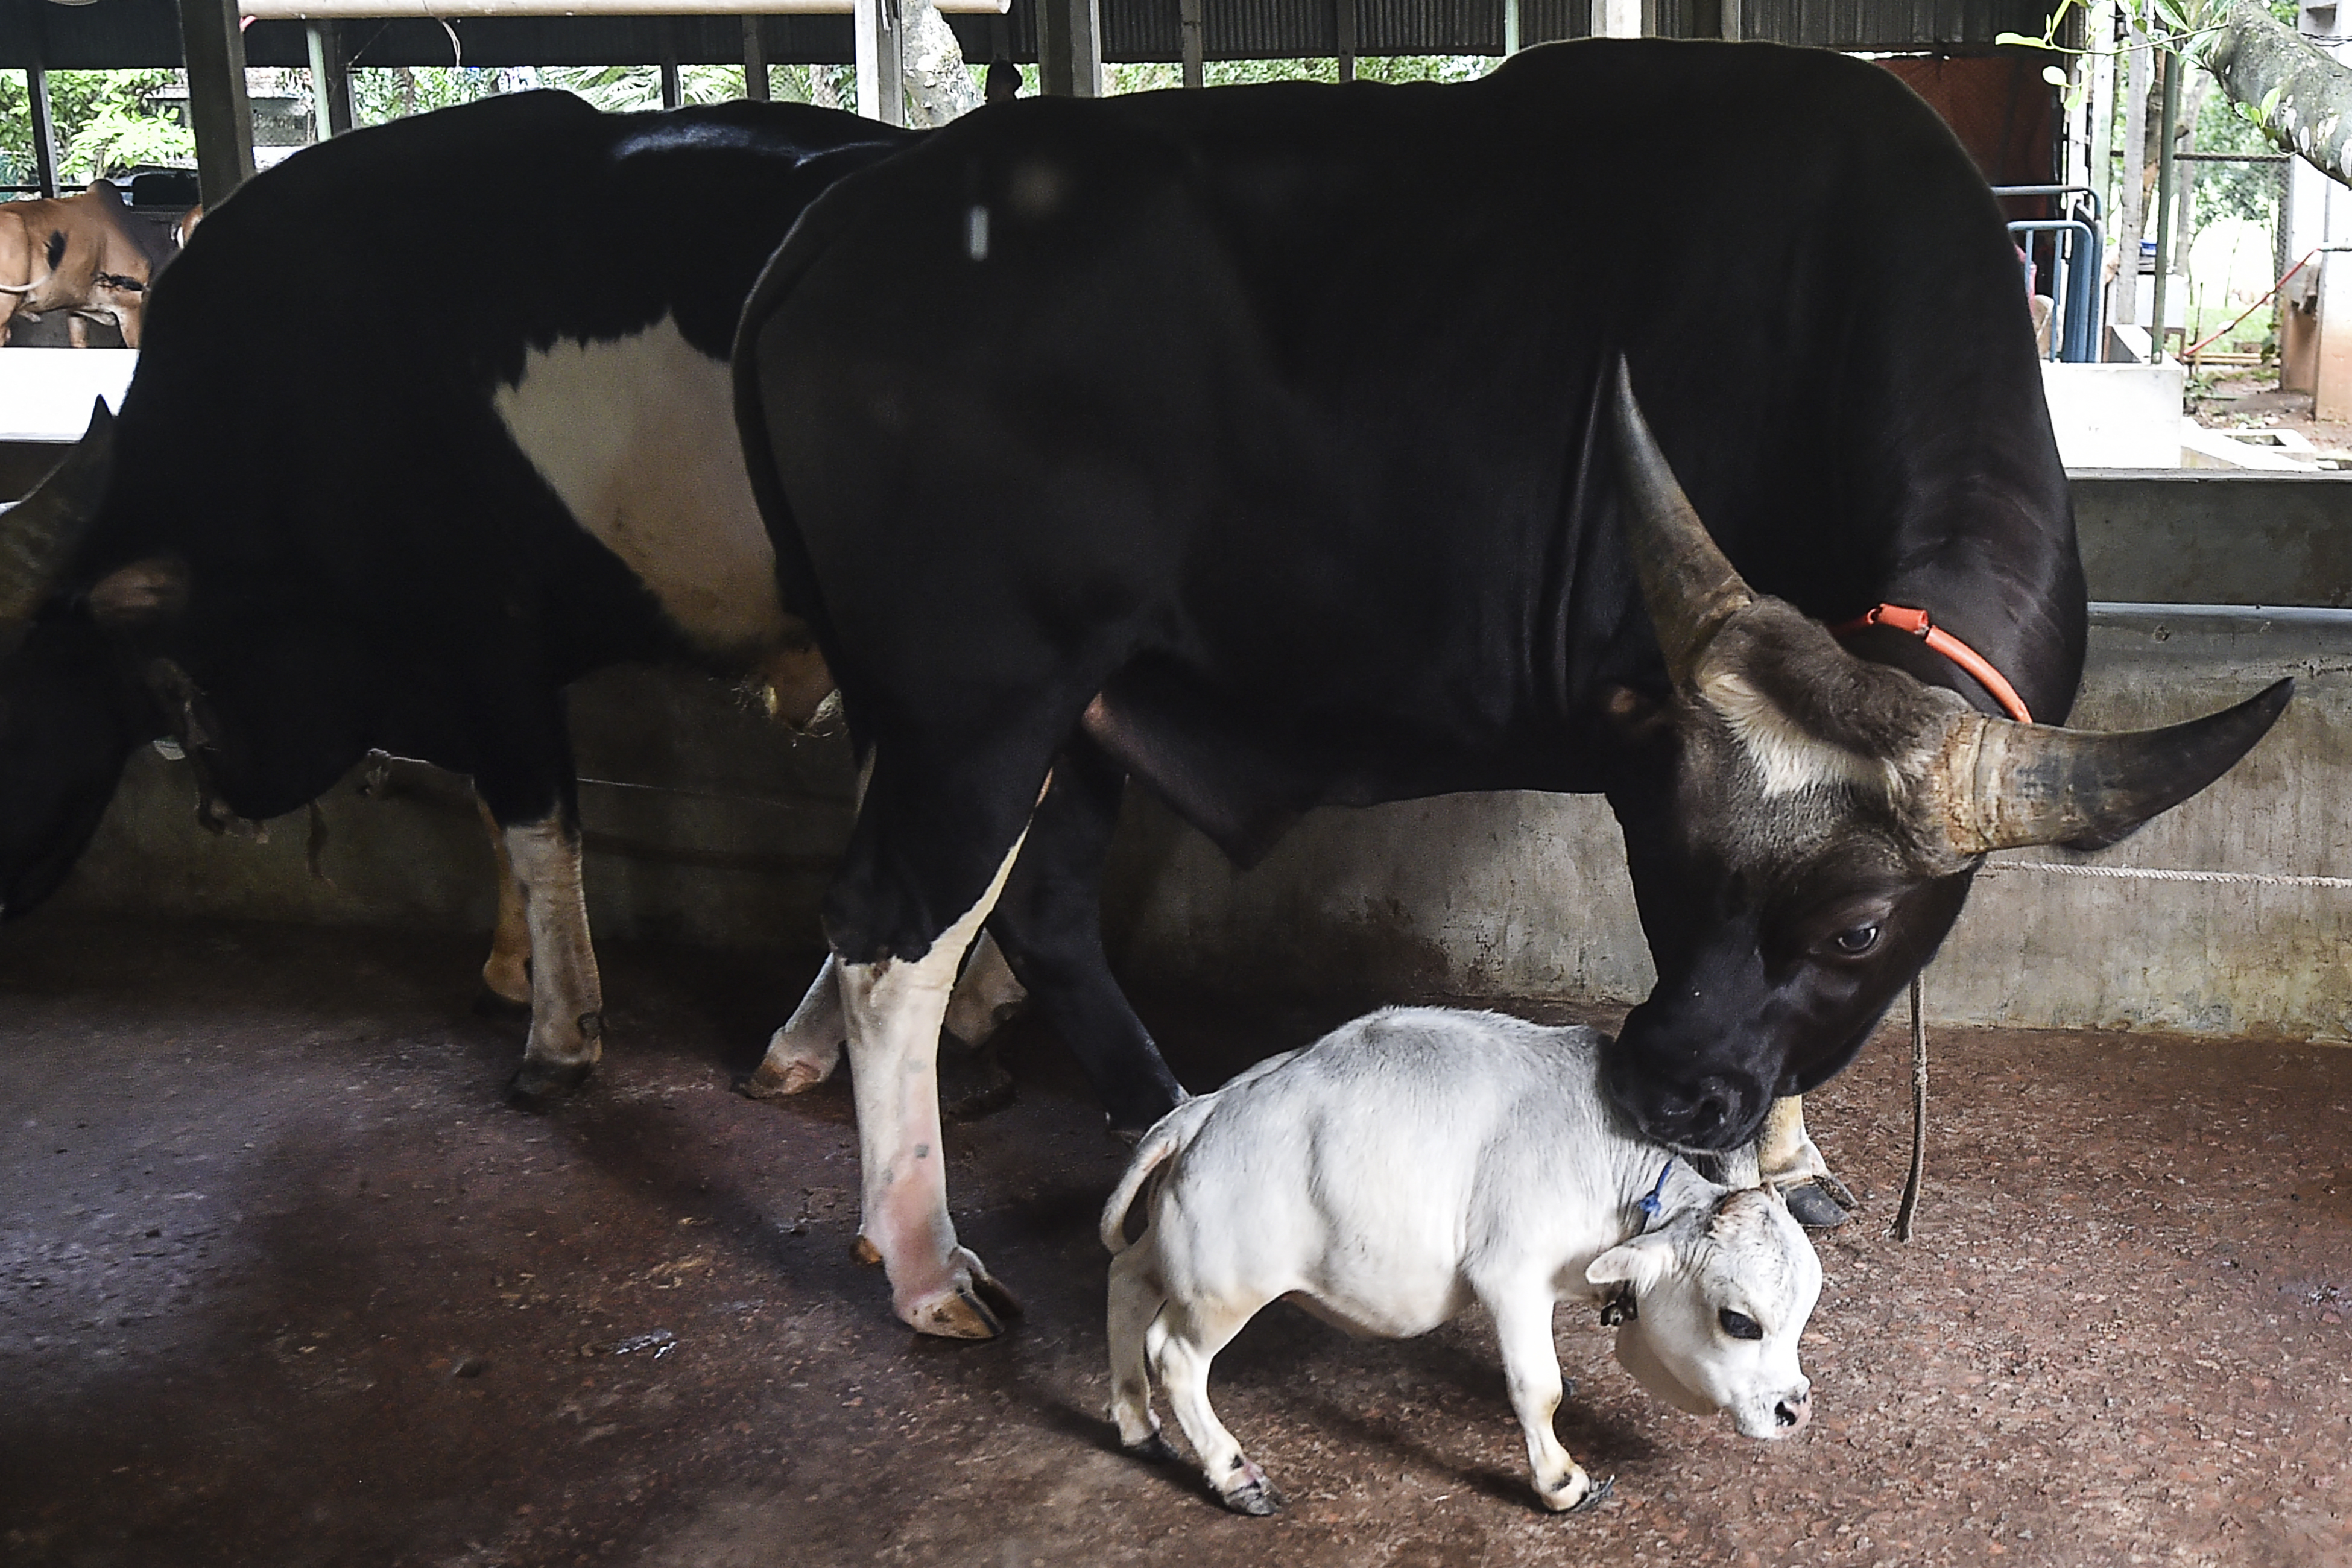 Kleinste koe ter wereld, Rani (51 cm), trekt veel bekijks in Bangladesh